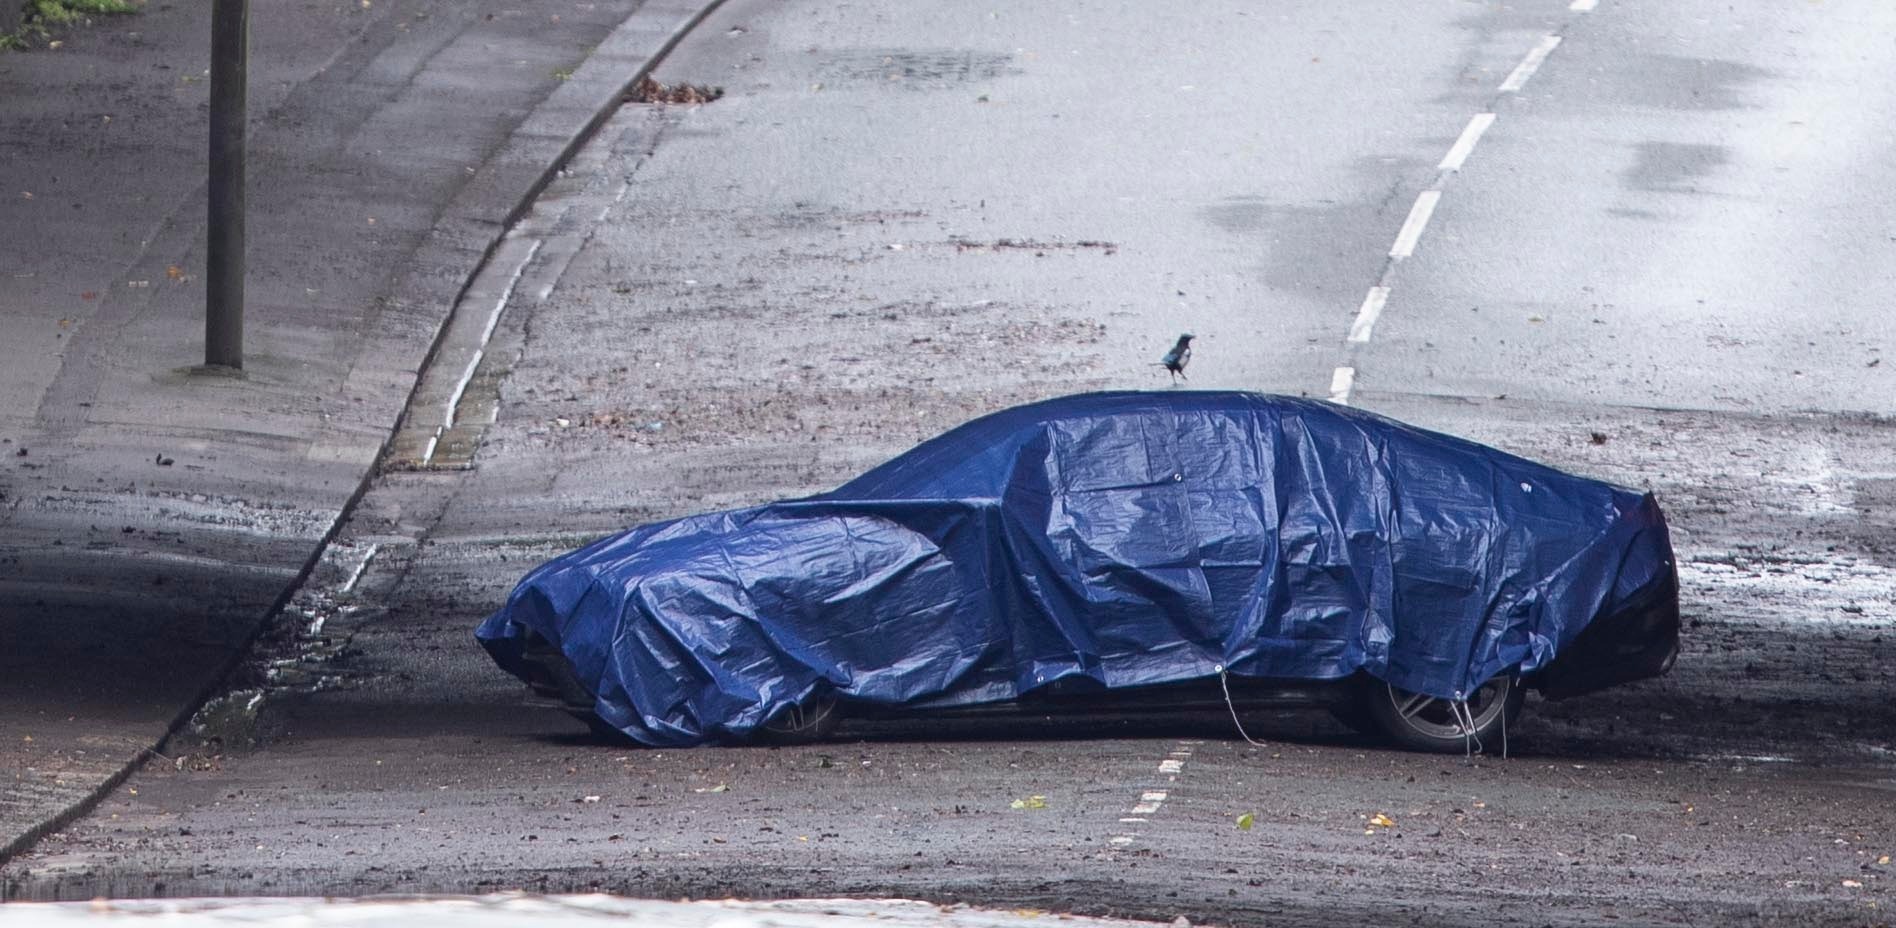 Zwei Menschen starben, nachdem sie auf einer überfluteten Straße in ihrem Auto eingeklemmt waren